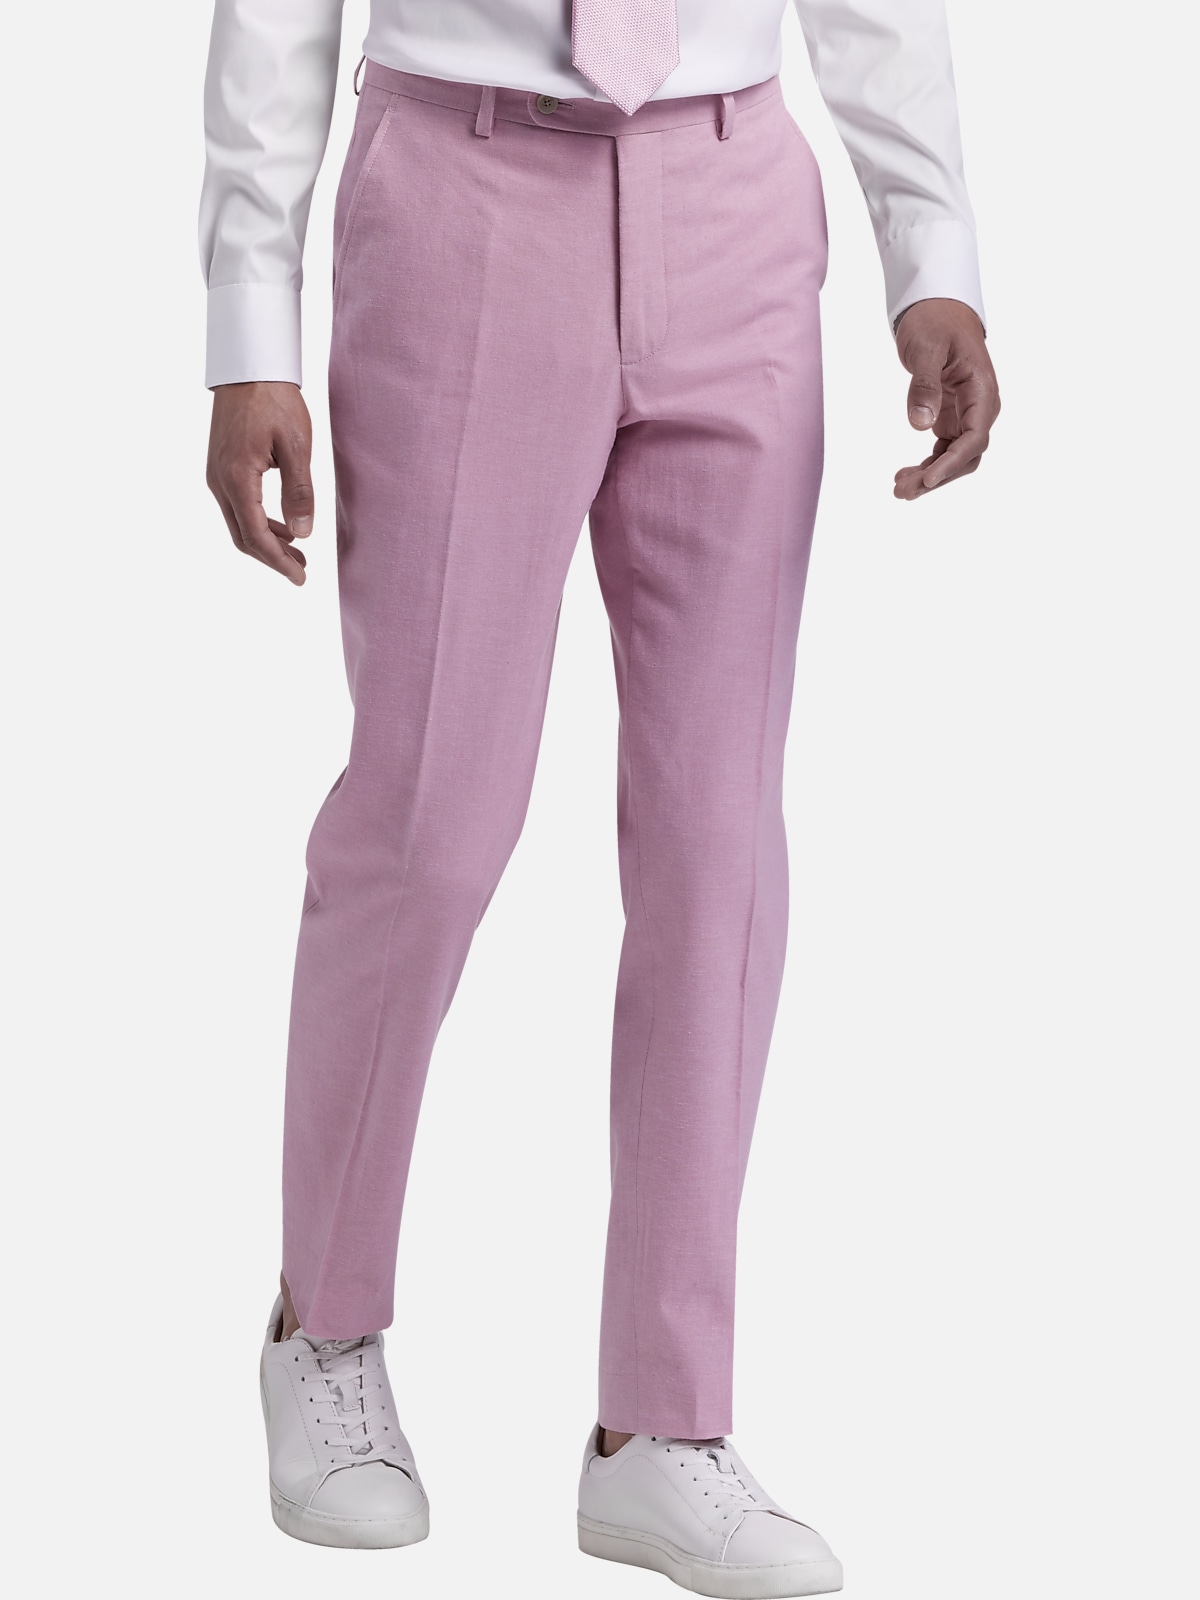 Joe Joseph Abboud Slim Fit Linen Blend Suit Separates Pants, Men's Pants